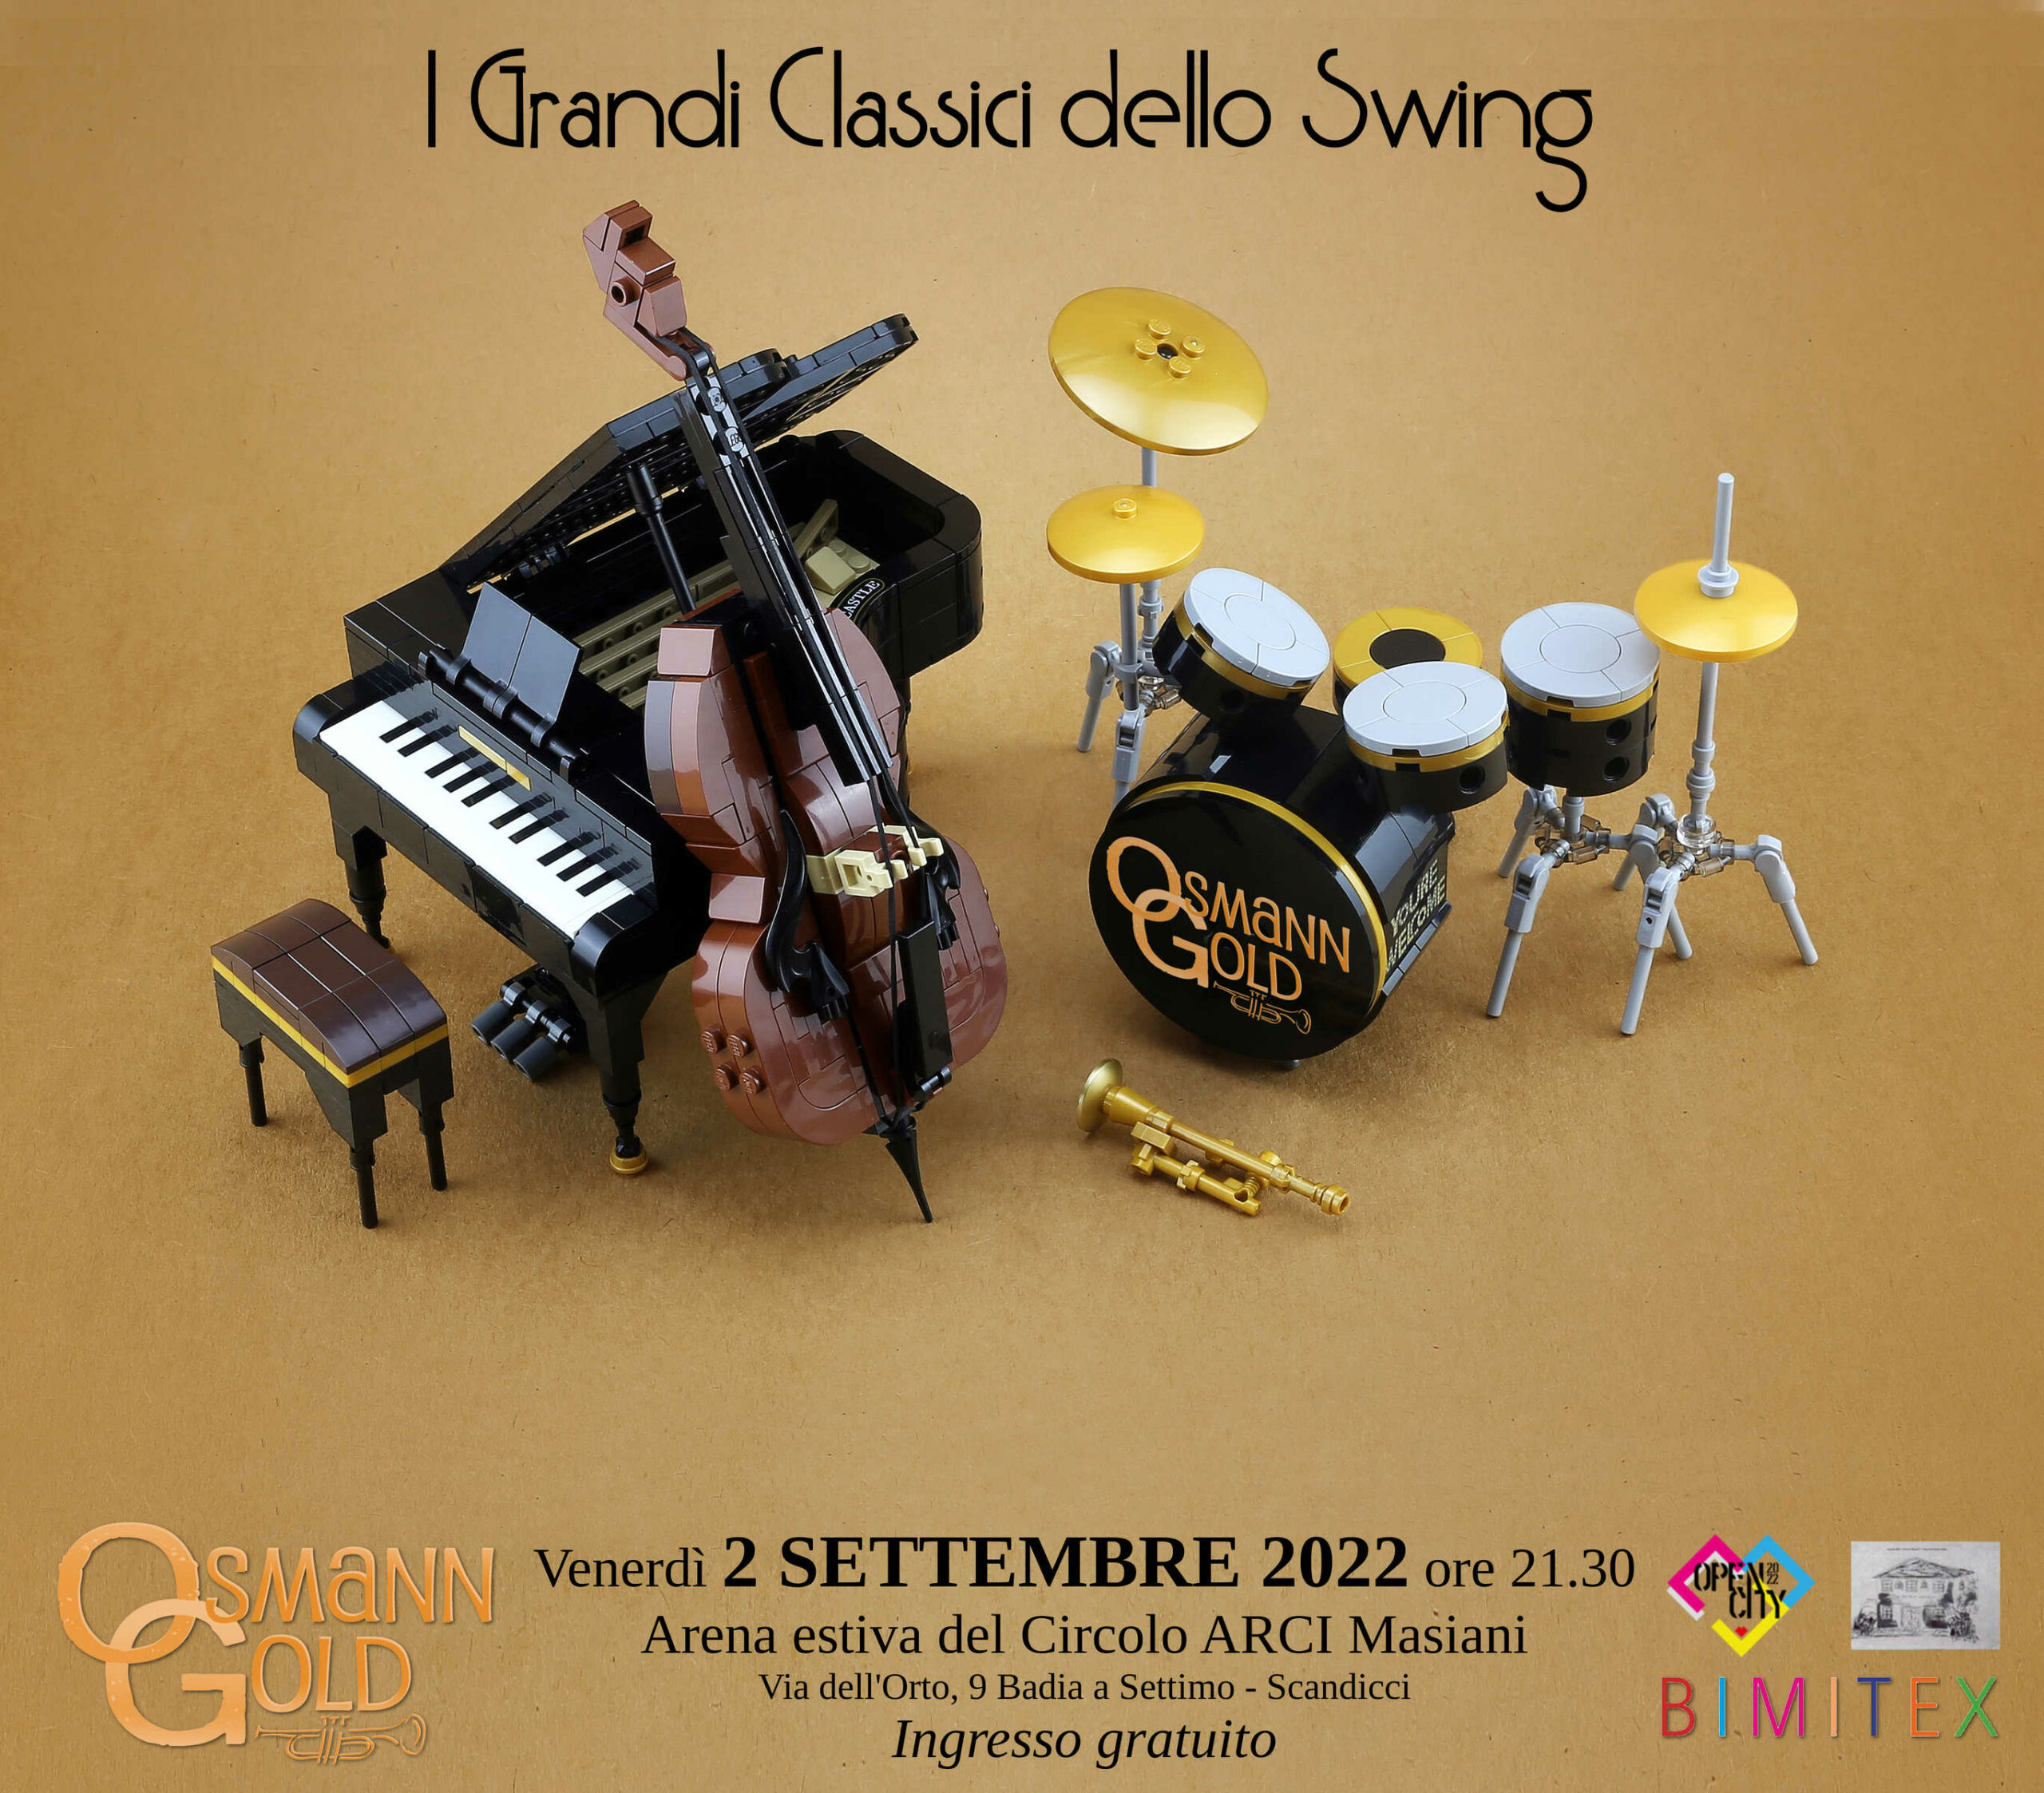 Locandina del concerto OsmannGold "I Grandi Classici dello Swing" a Scandicci